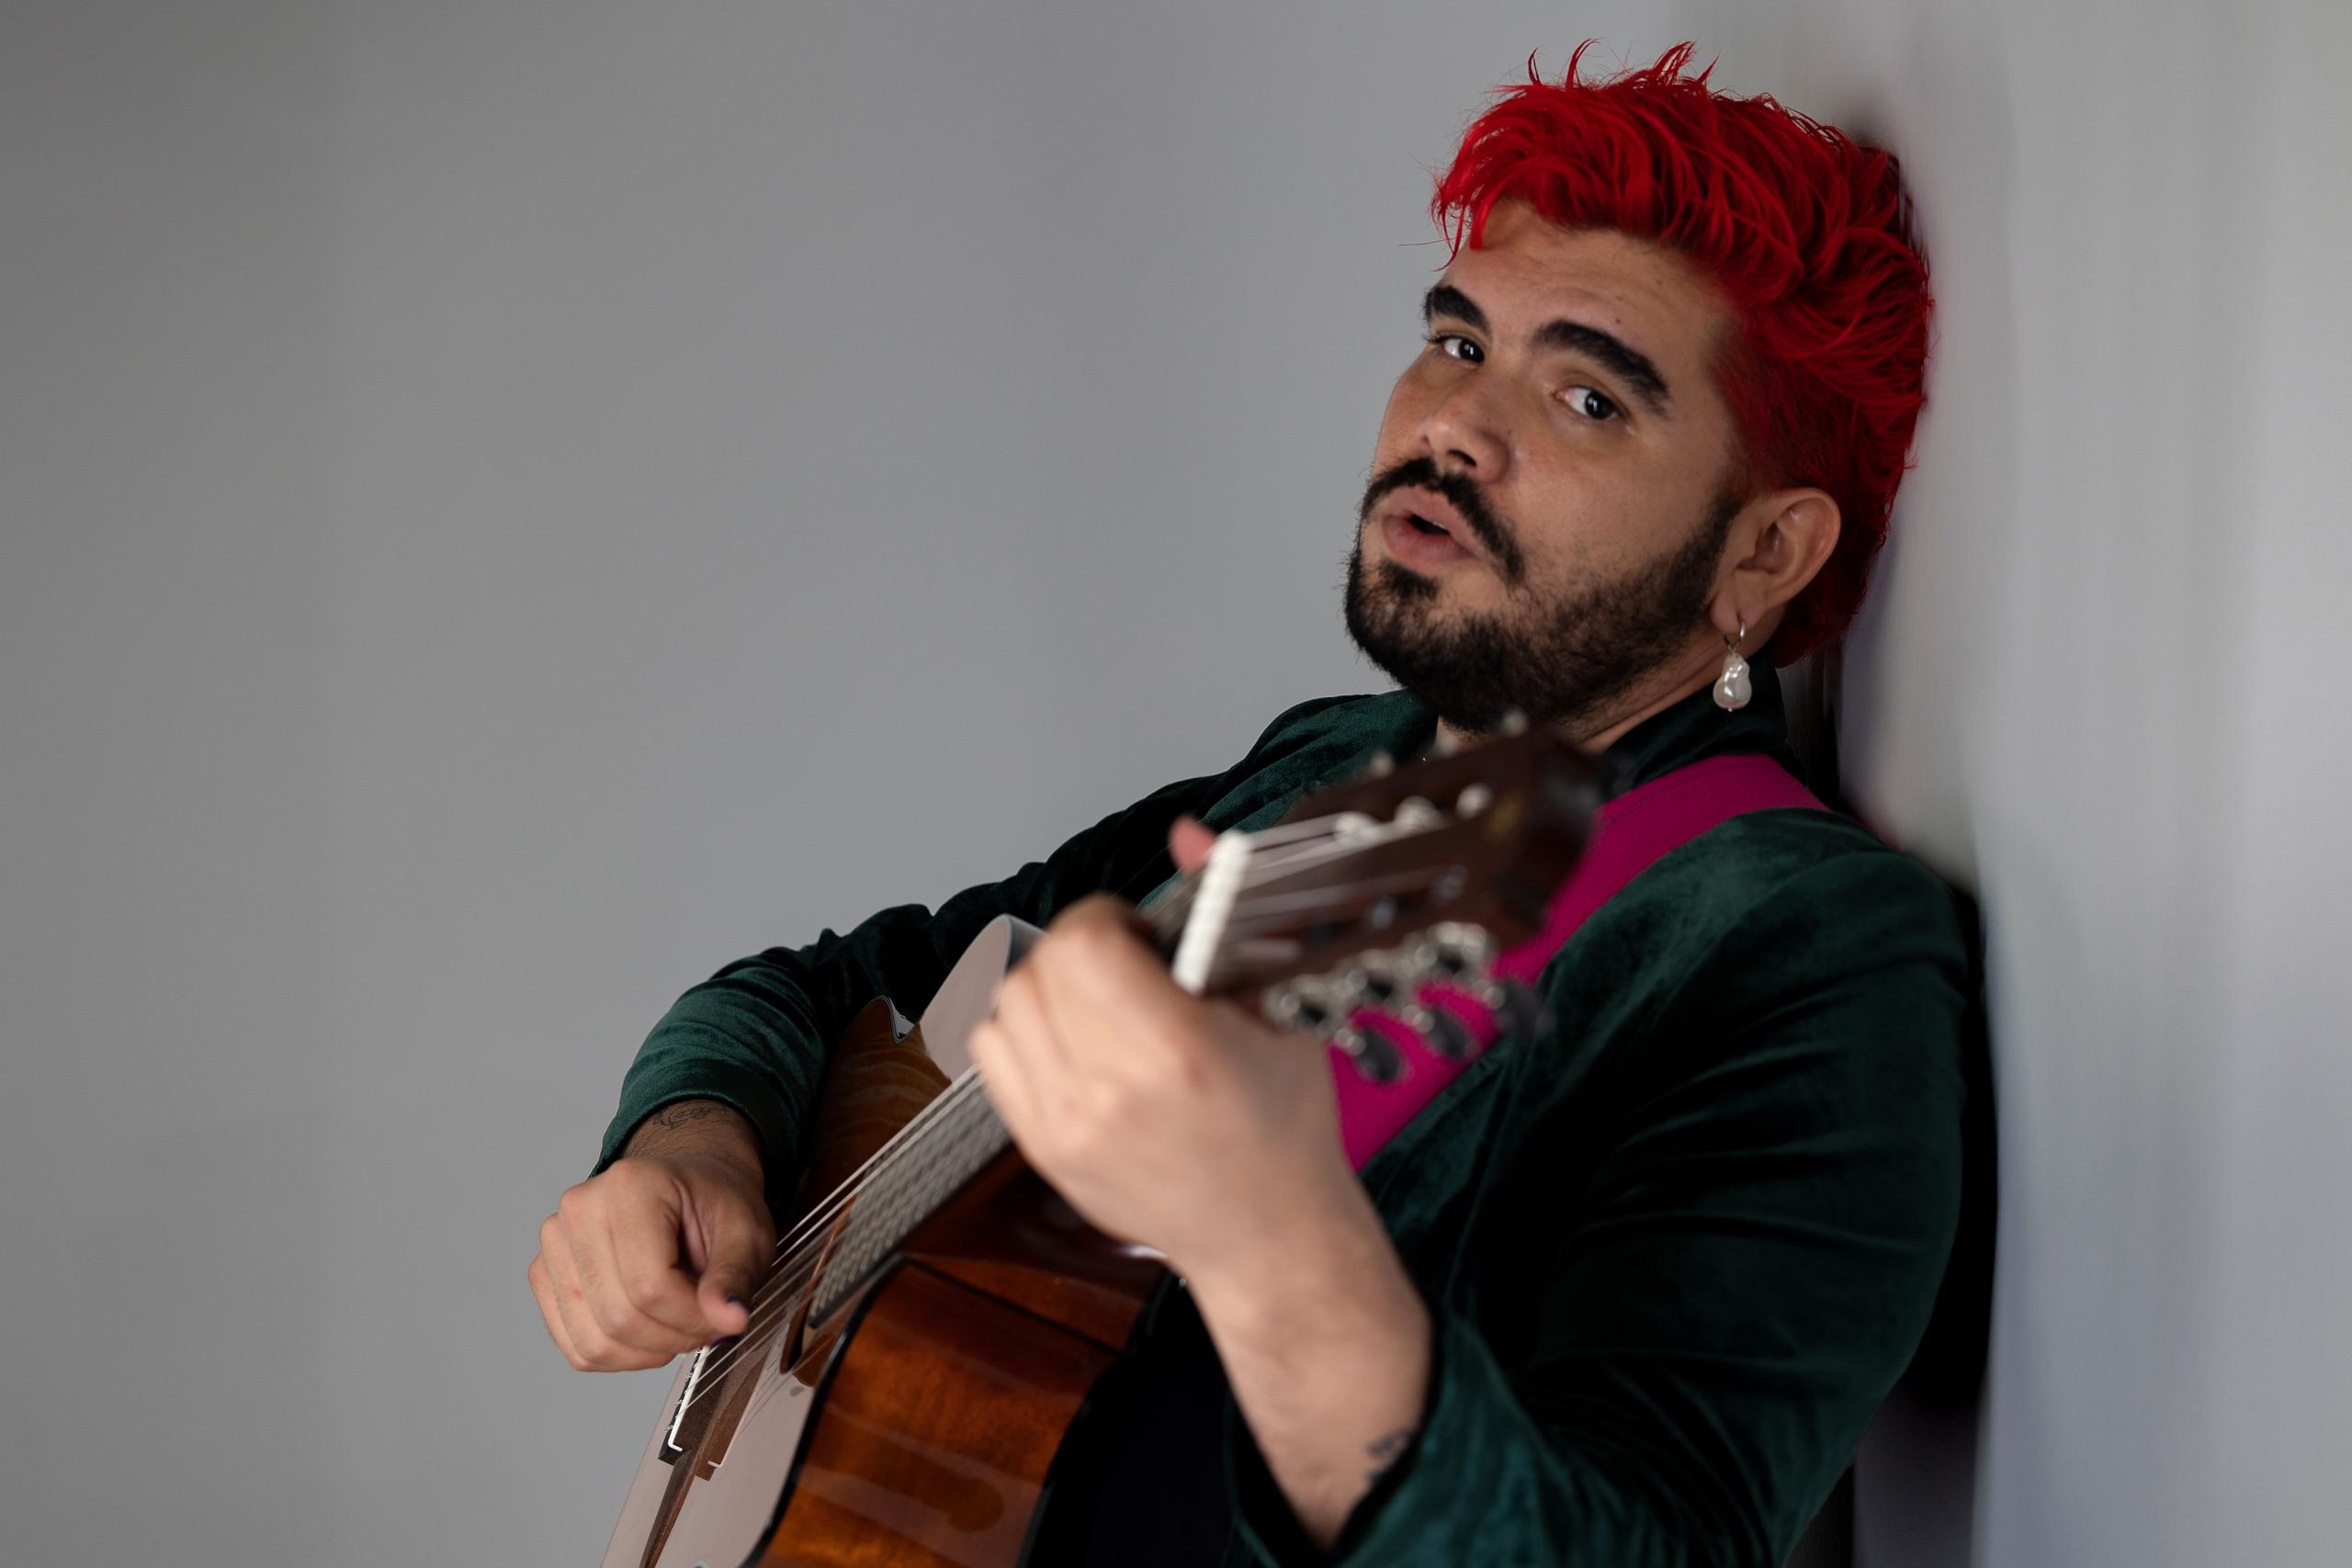 El cantautor puertorriqueño trabaja en un segundo álbum, cuyo contenido expondrá mucho de lo que lleva en su interior.